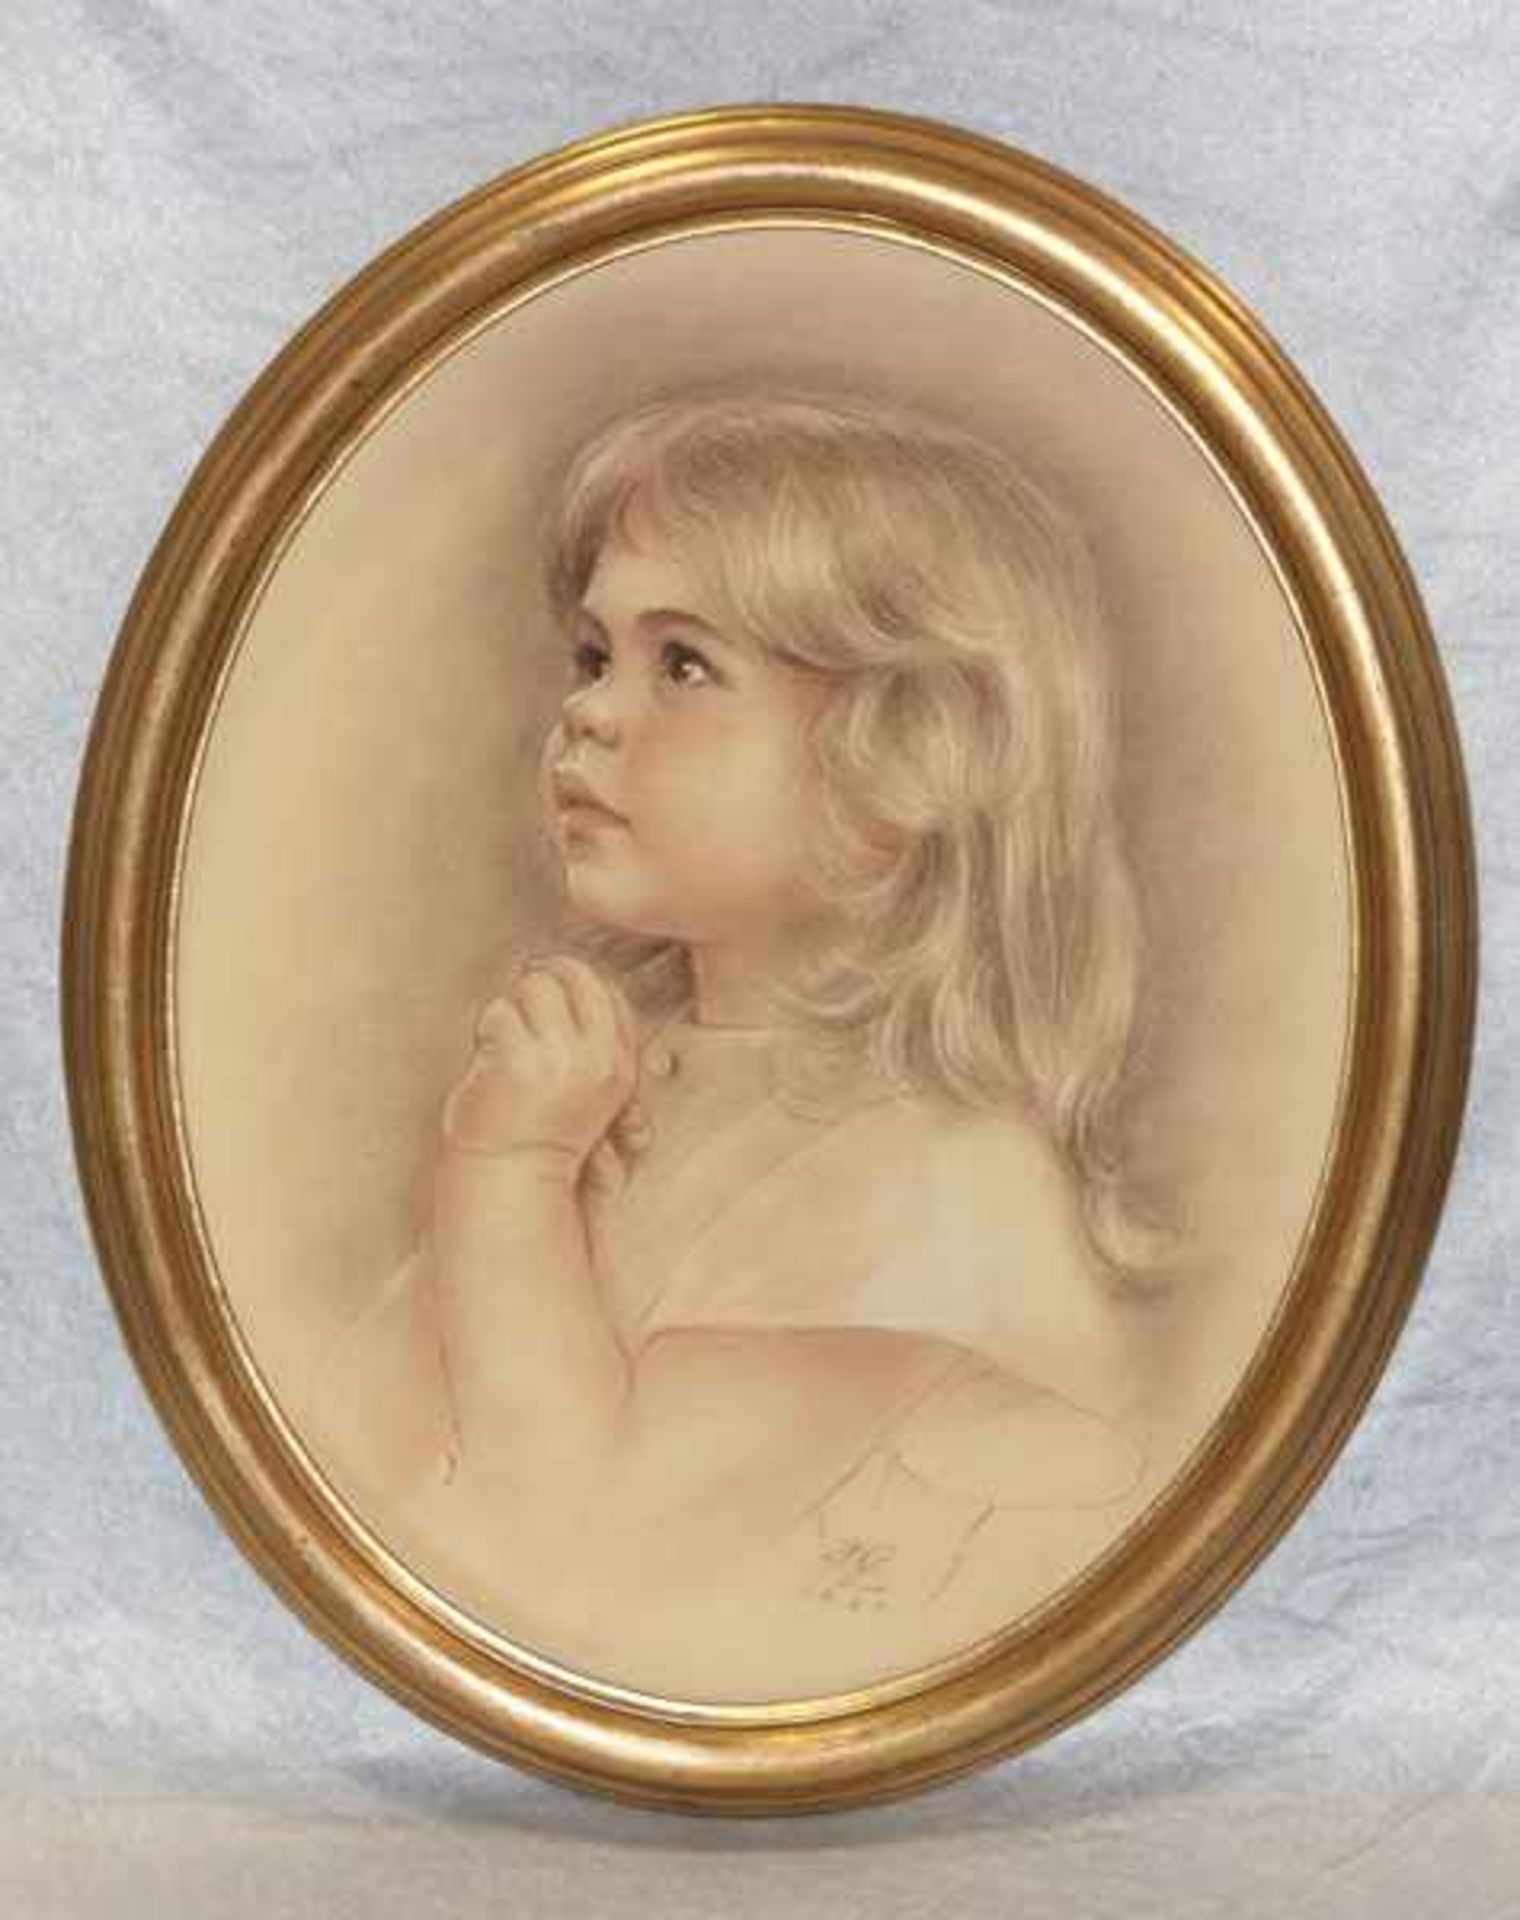 Gemälde Pastell 'Mädchenporträt', signiert HZ, datiert 1980, für Harry Zeiler, * 18.1.1930 + 5.10.